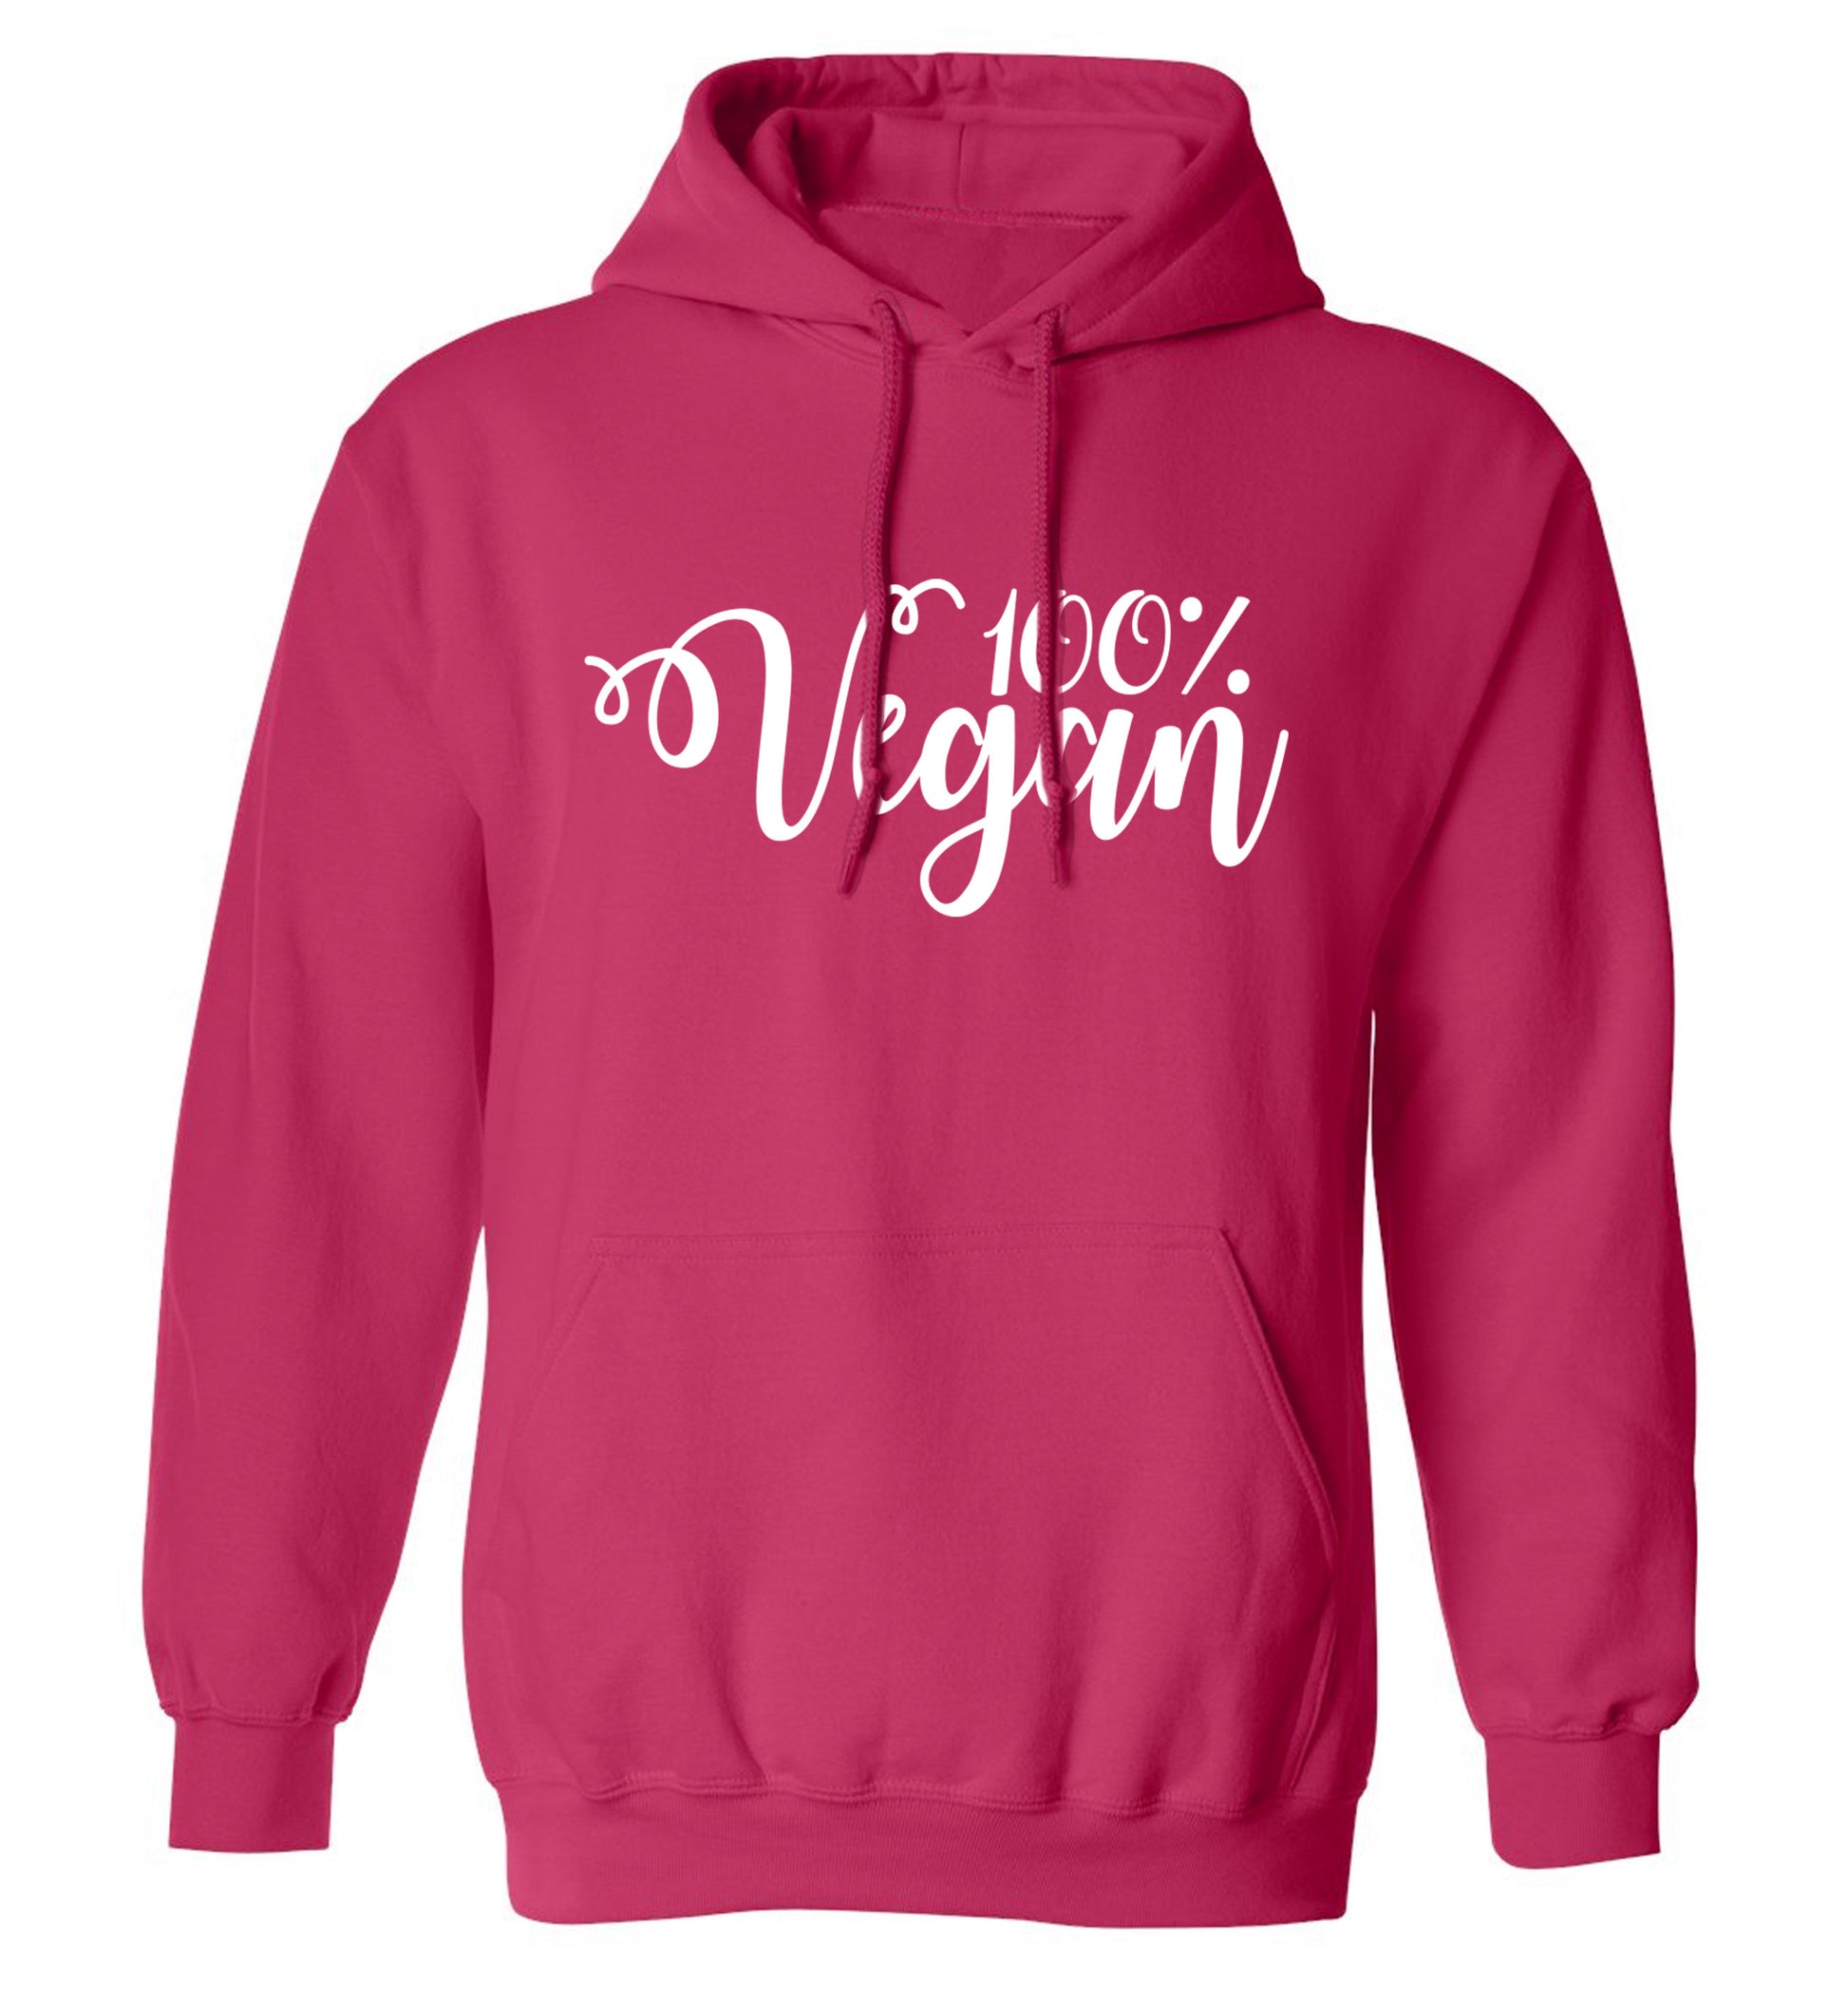 100% Vegan adults unisex pink hoodie 2XL